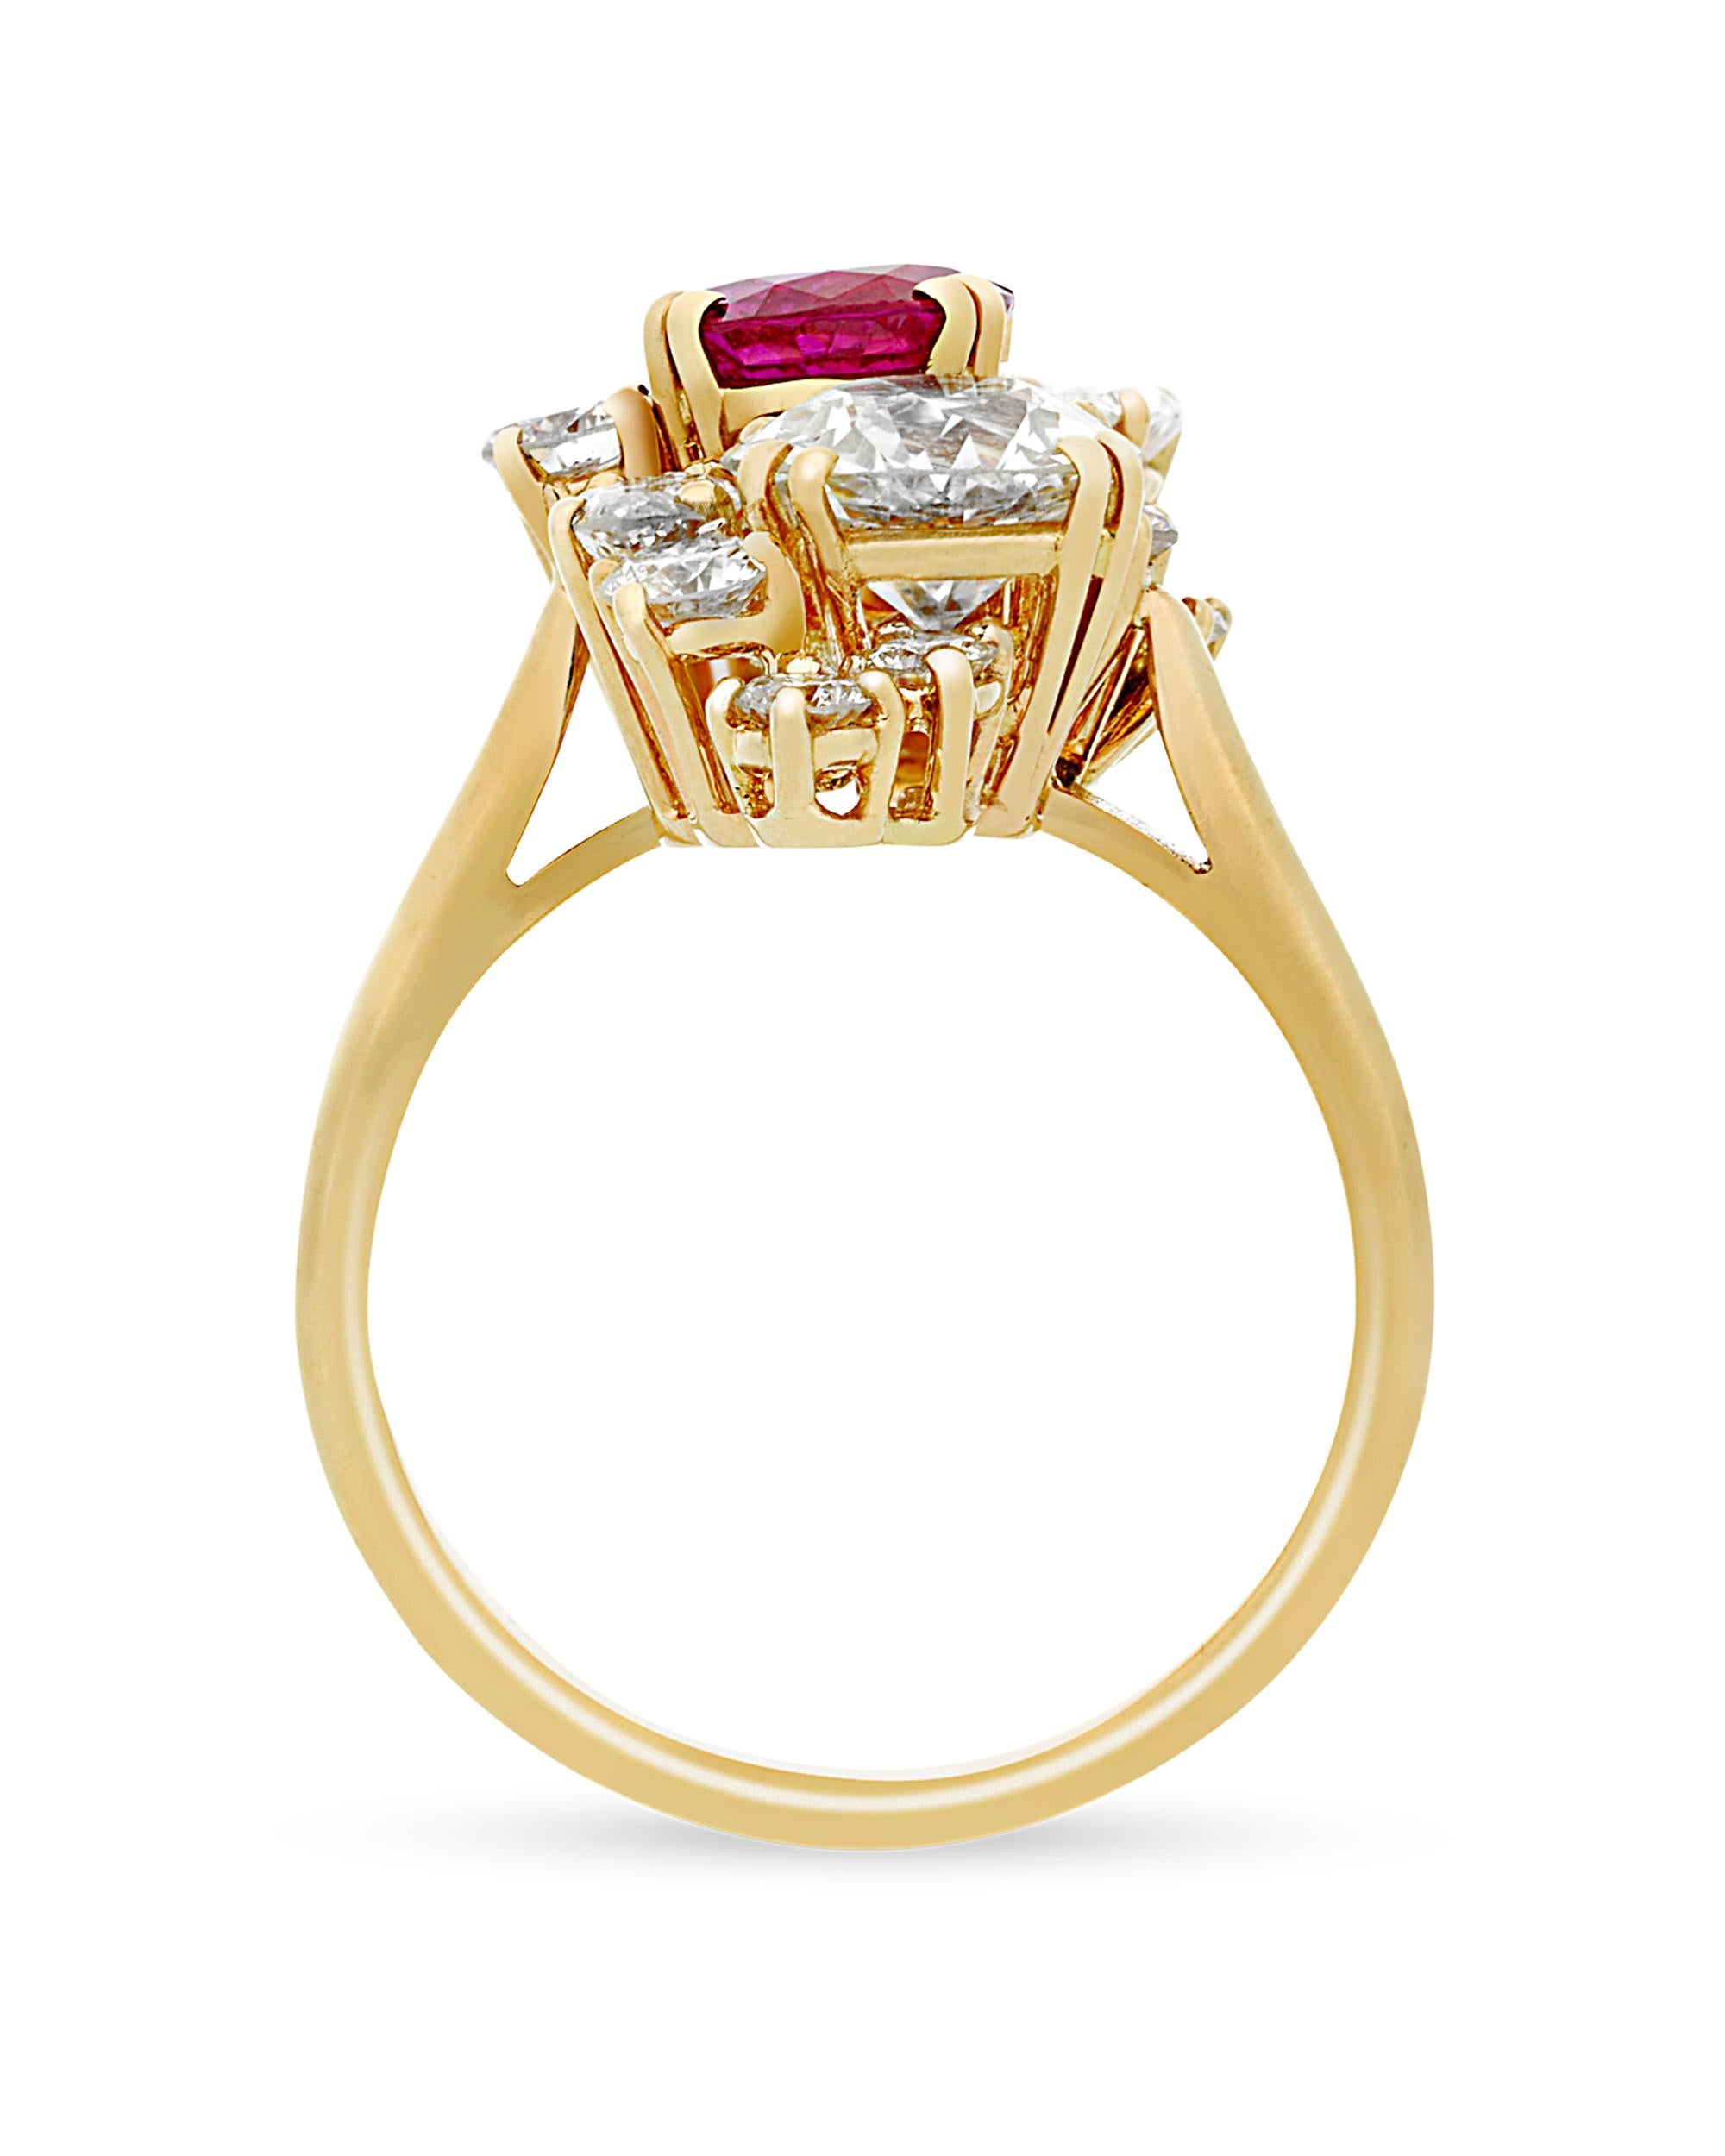 Dieser bemerkenswerte Ring mit einem Burma-Rubin von Boucheron ist eine wunderschöne Schmuckkreation von einem der berühmtesten Namen in der Luxuswelt. Der ovale Rubin von etwa 0,89 Karat wurde von den American Gemological Laboratories als